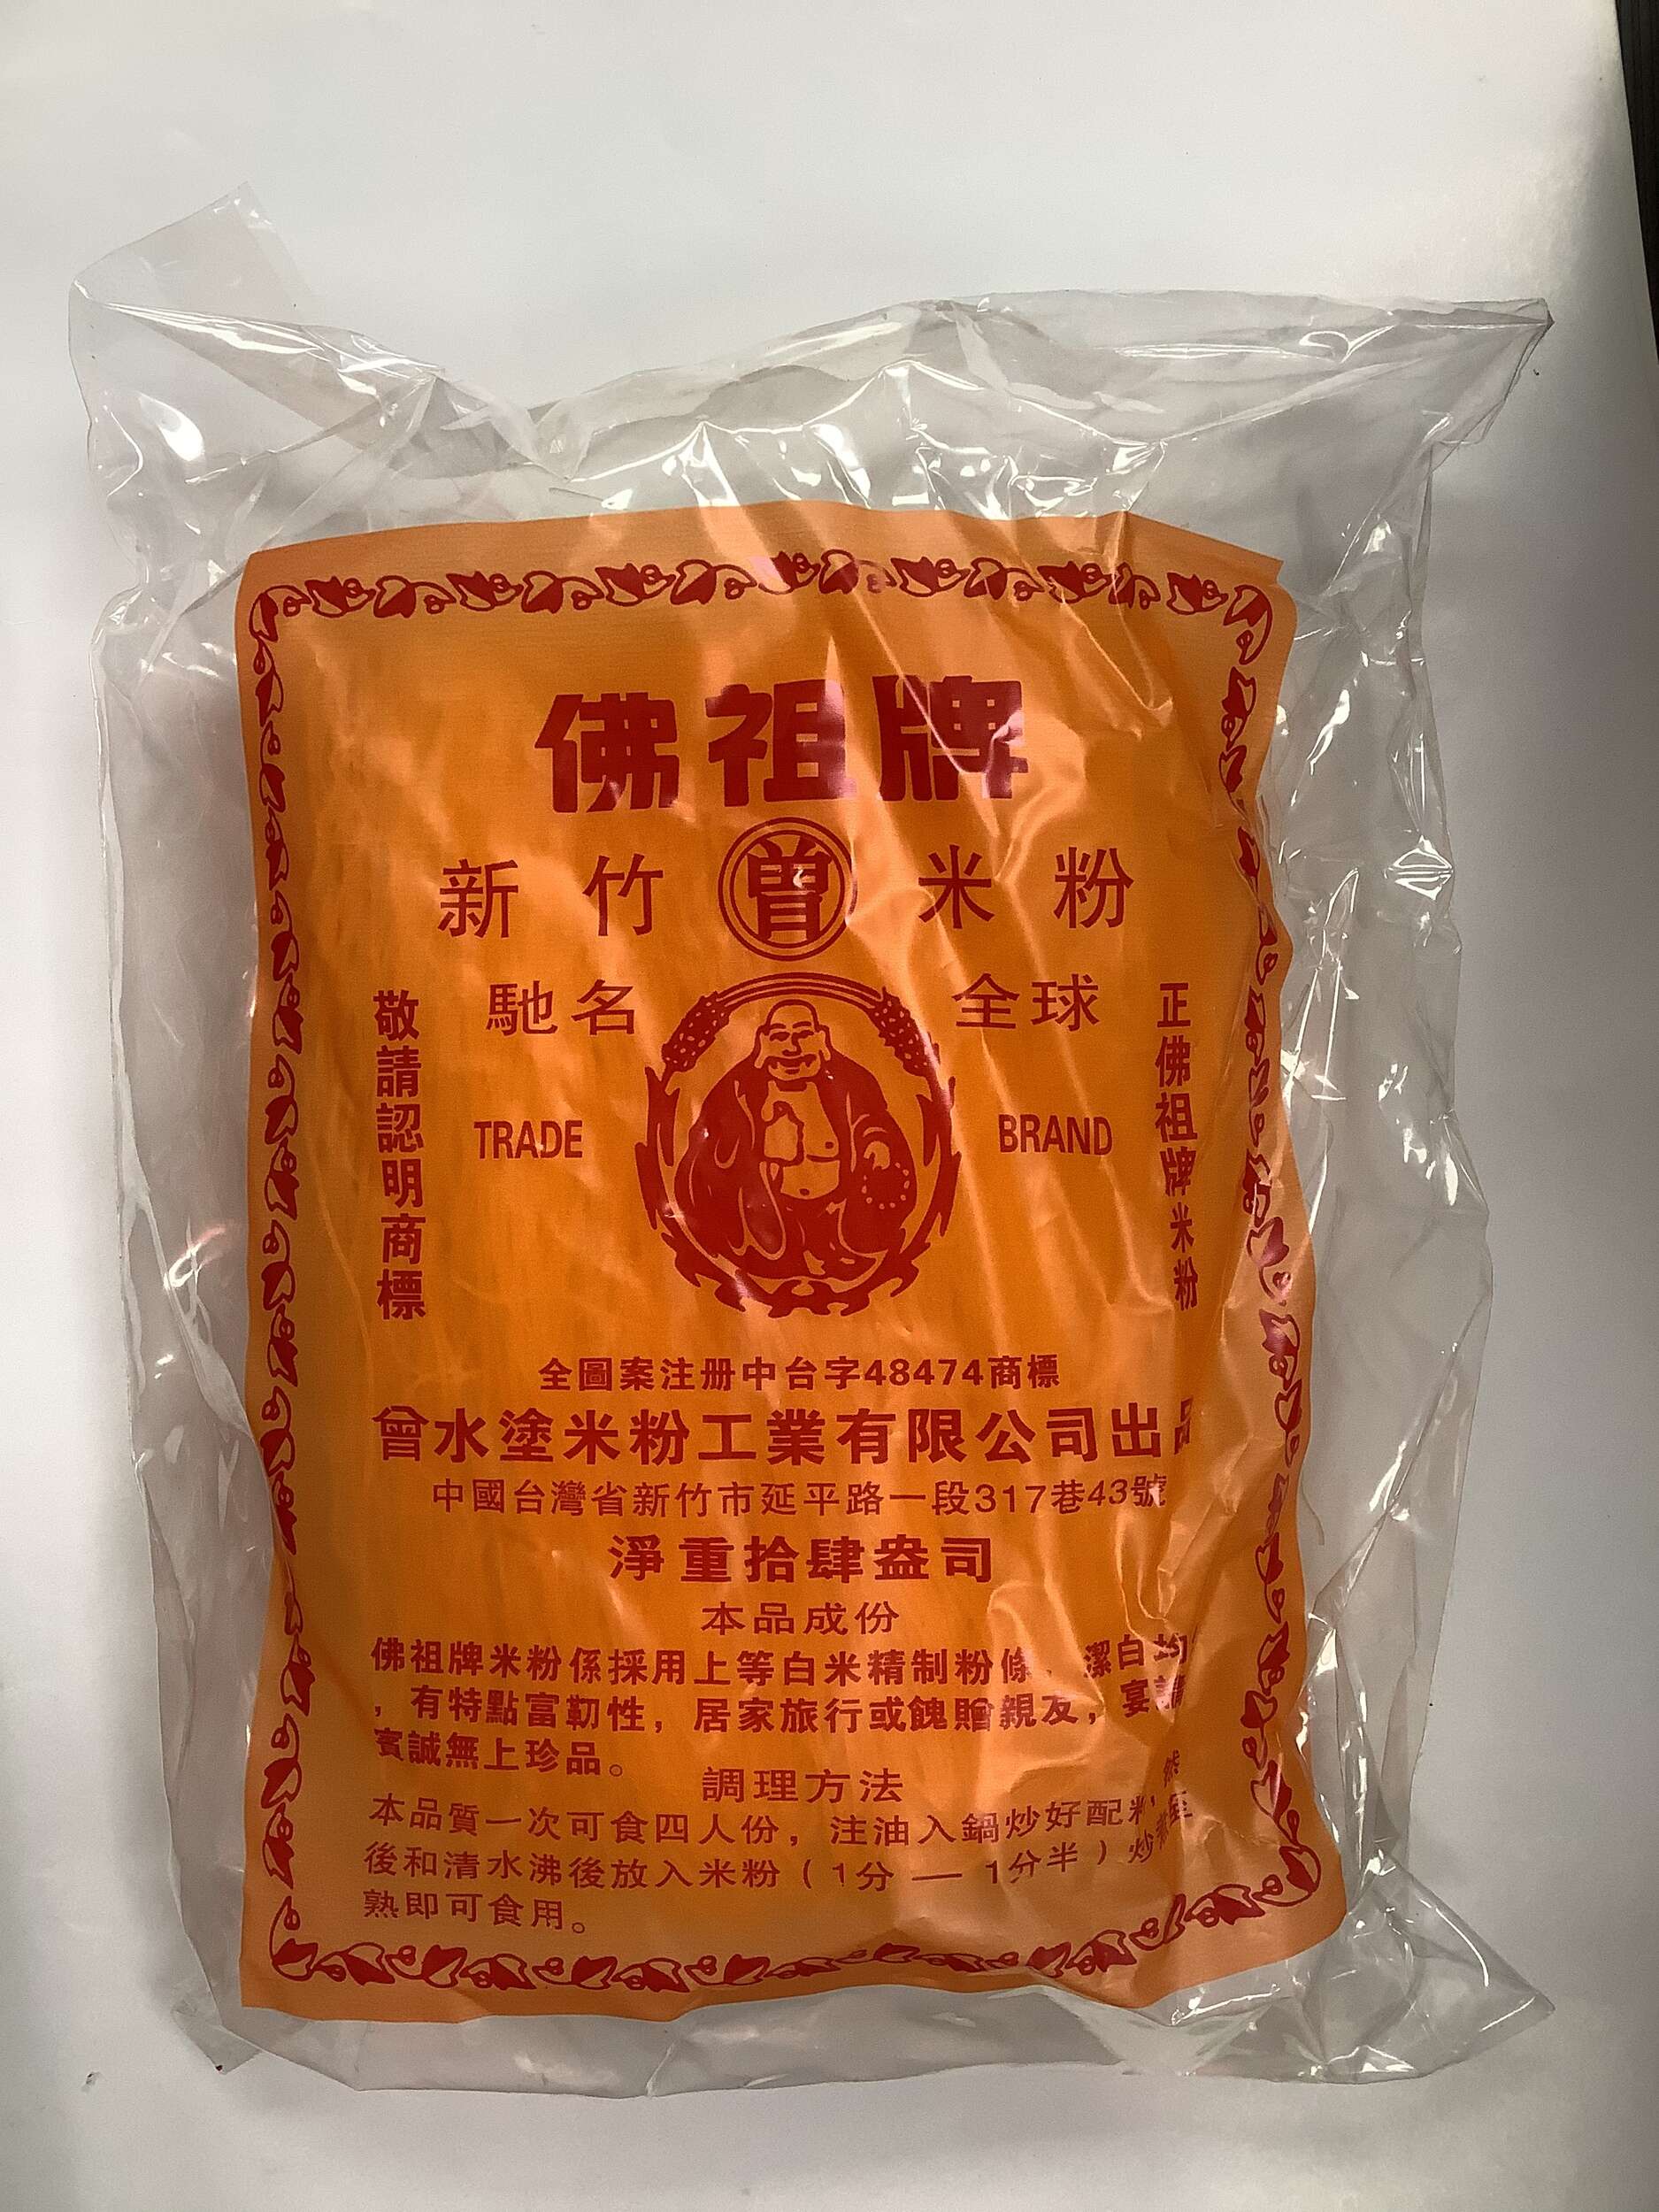 Famous Buddha Brand Rice Stick - 14 oz